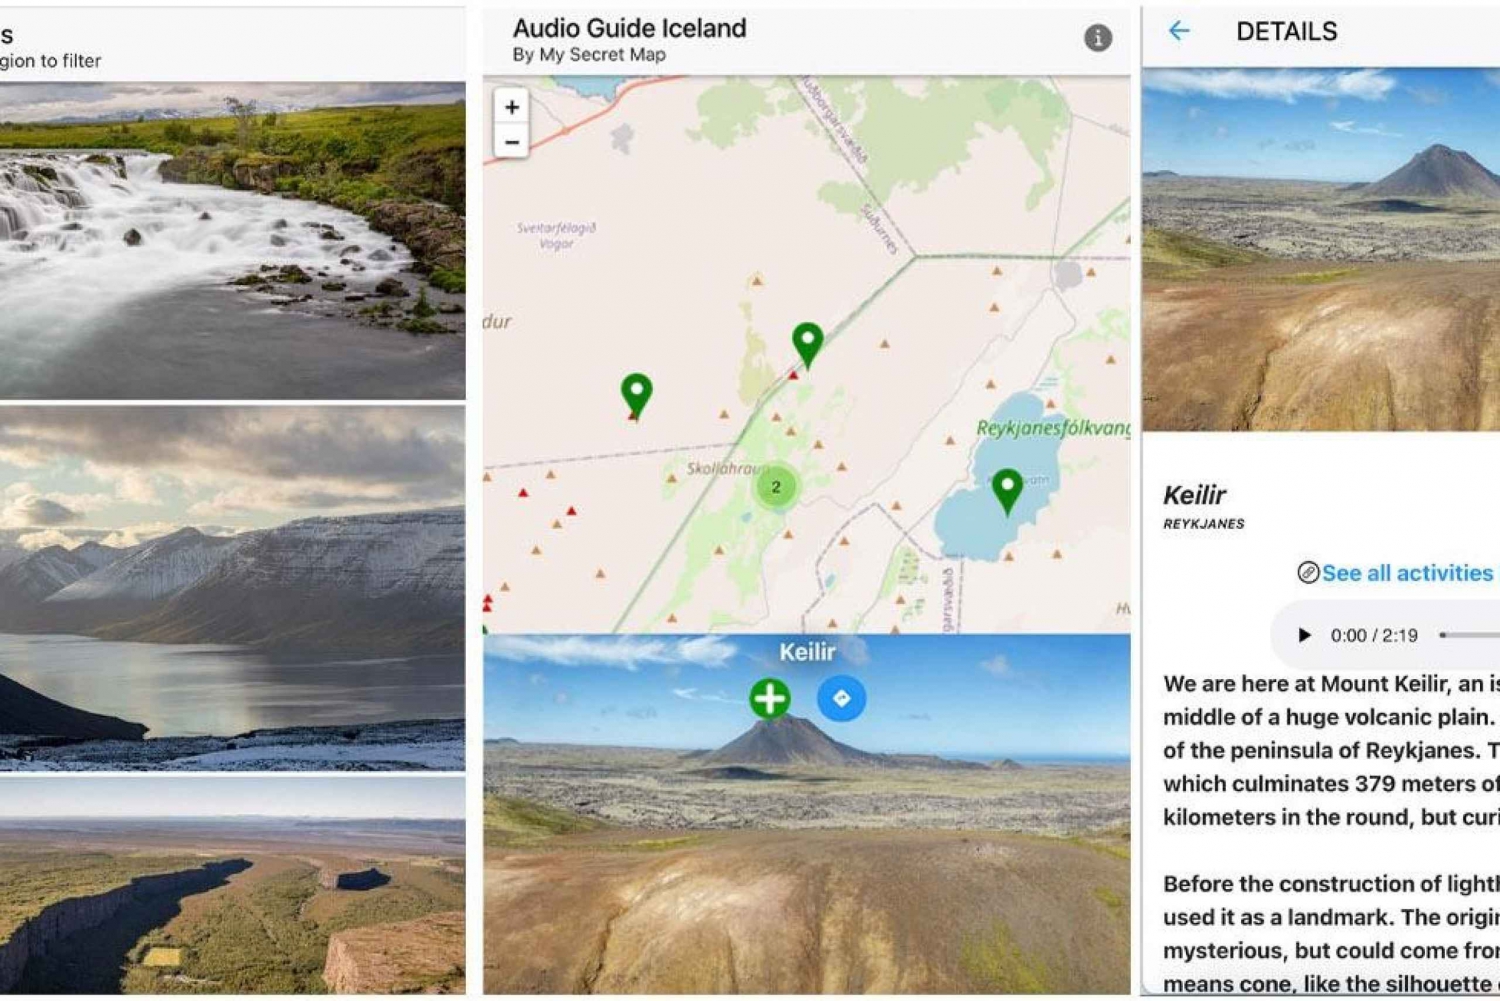 Islandia: Audioprzewodnik, interaktywna mapa 200 miejsc ++